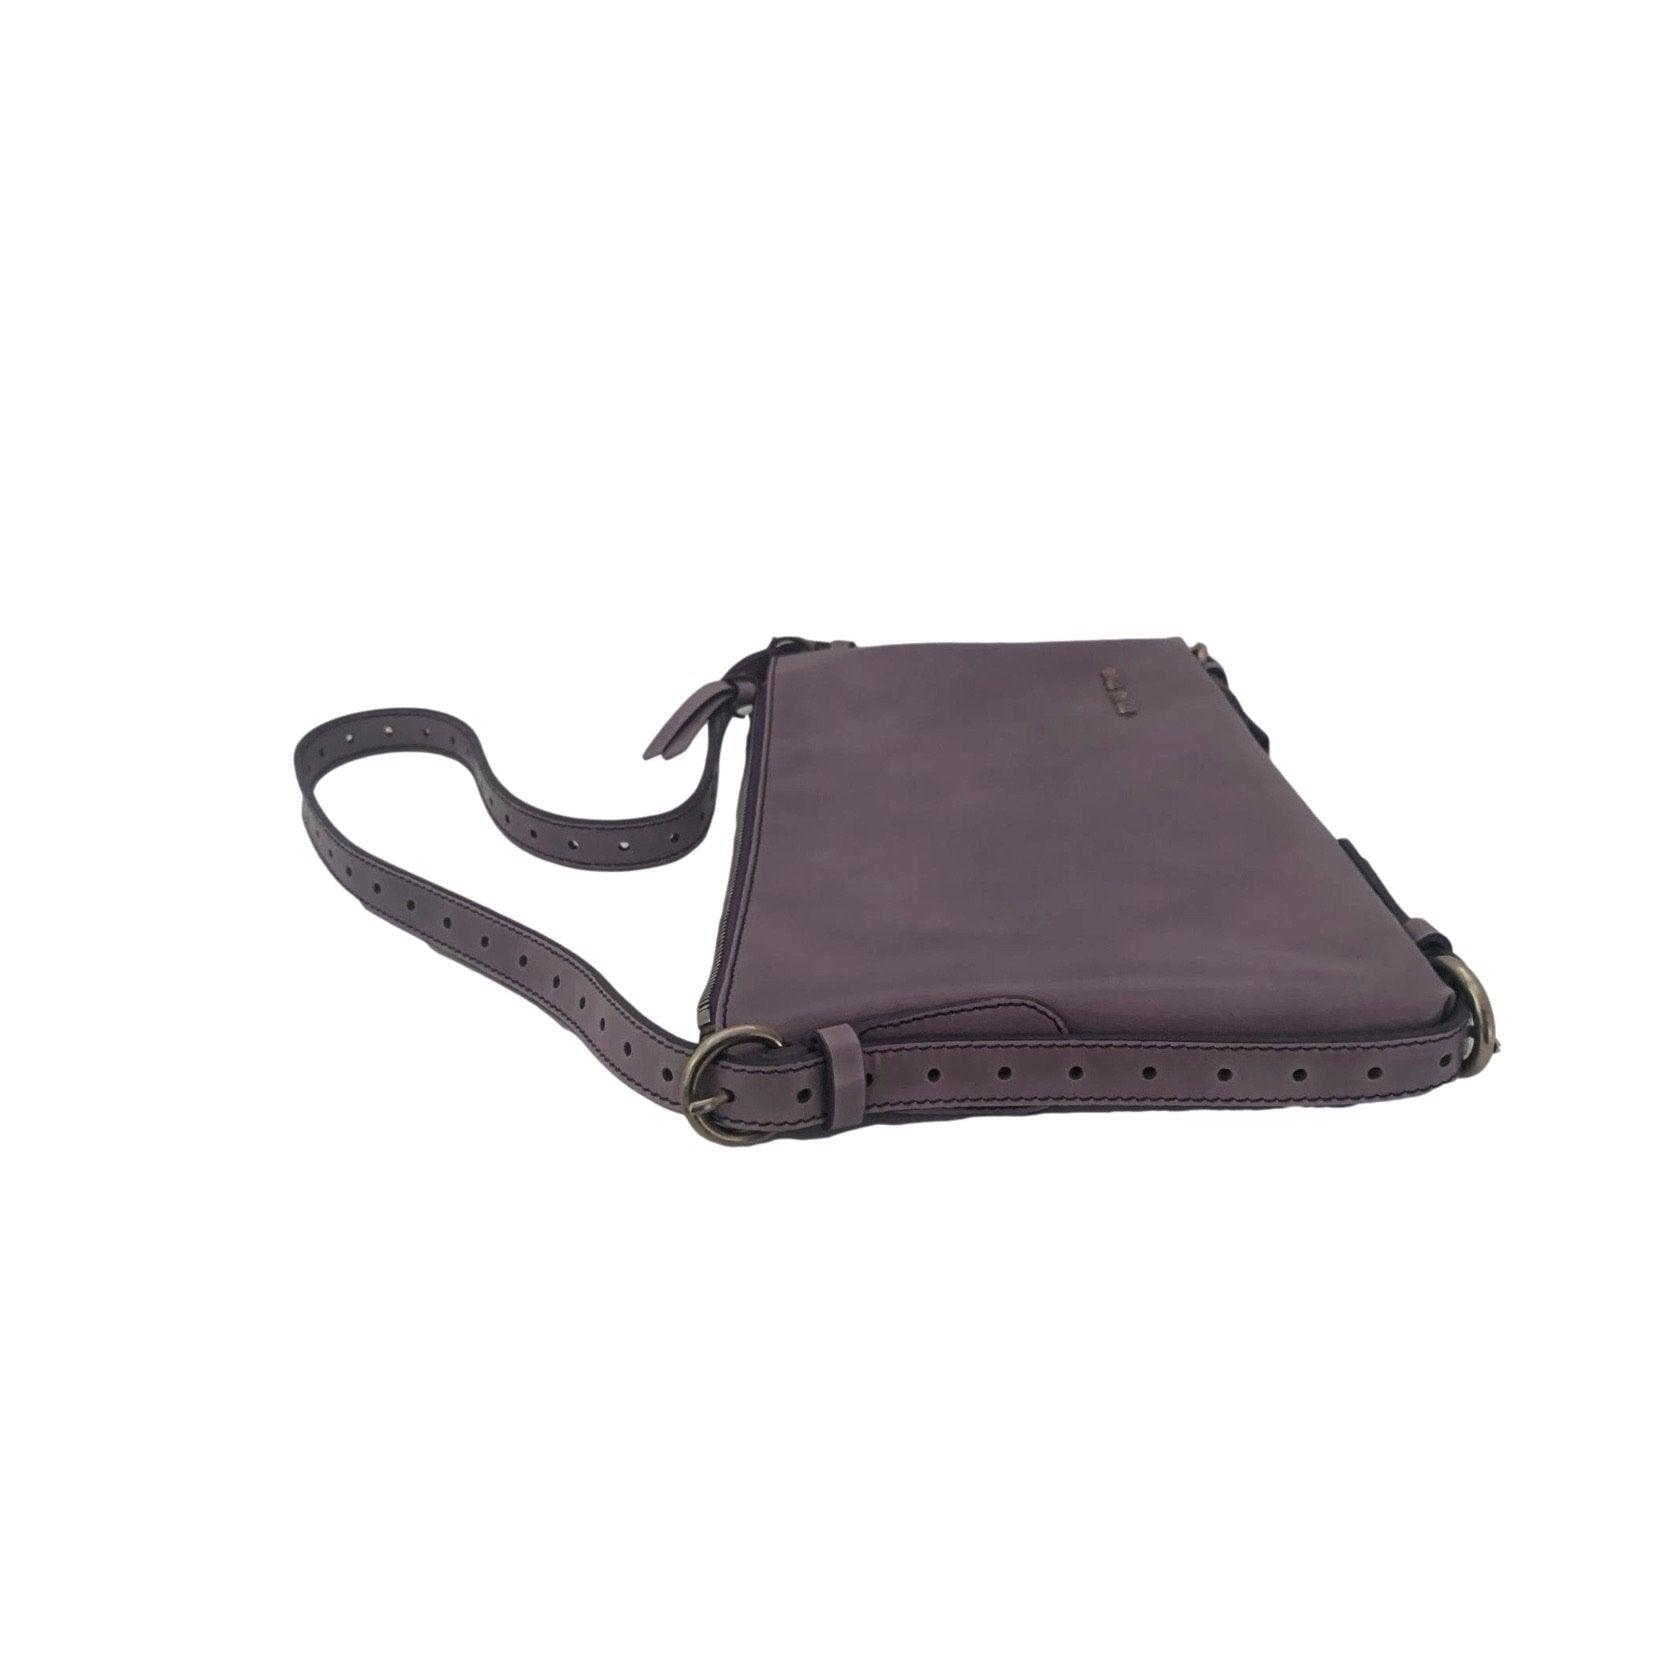 Miu Miu Lavender Shoulder Bag - Handbags